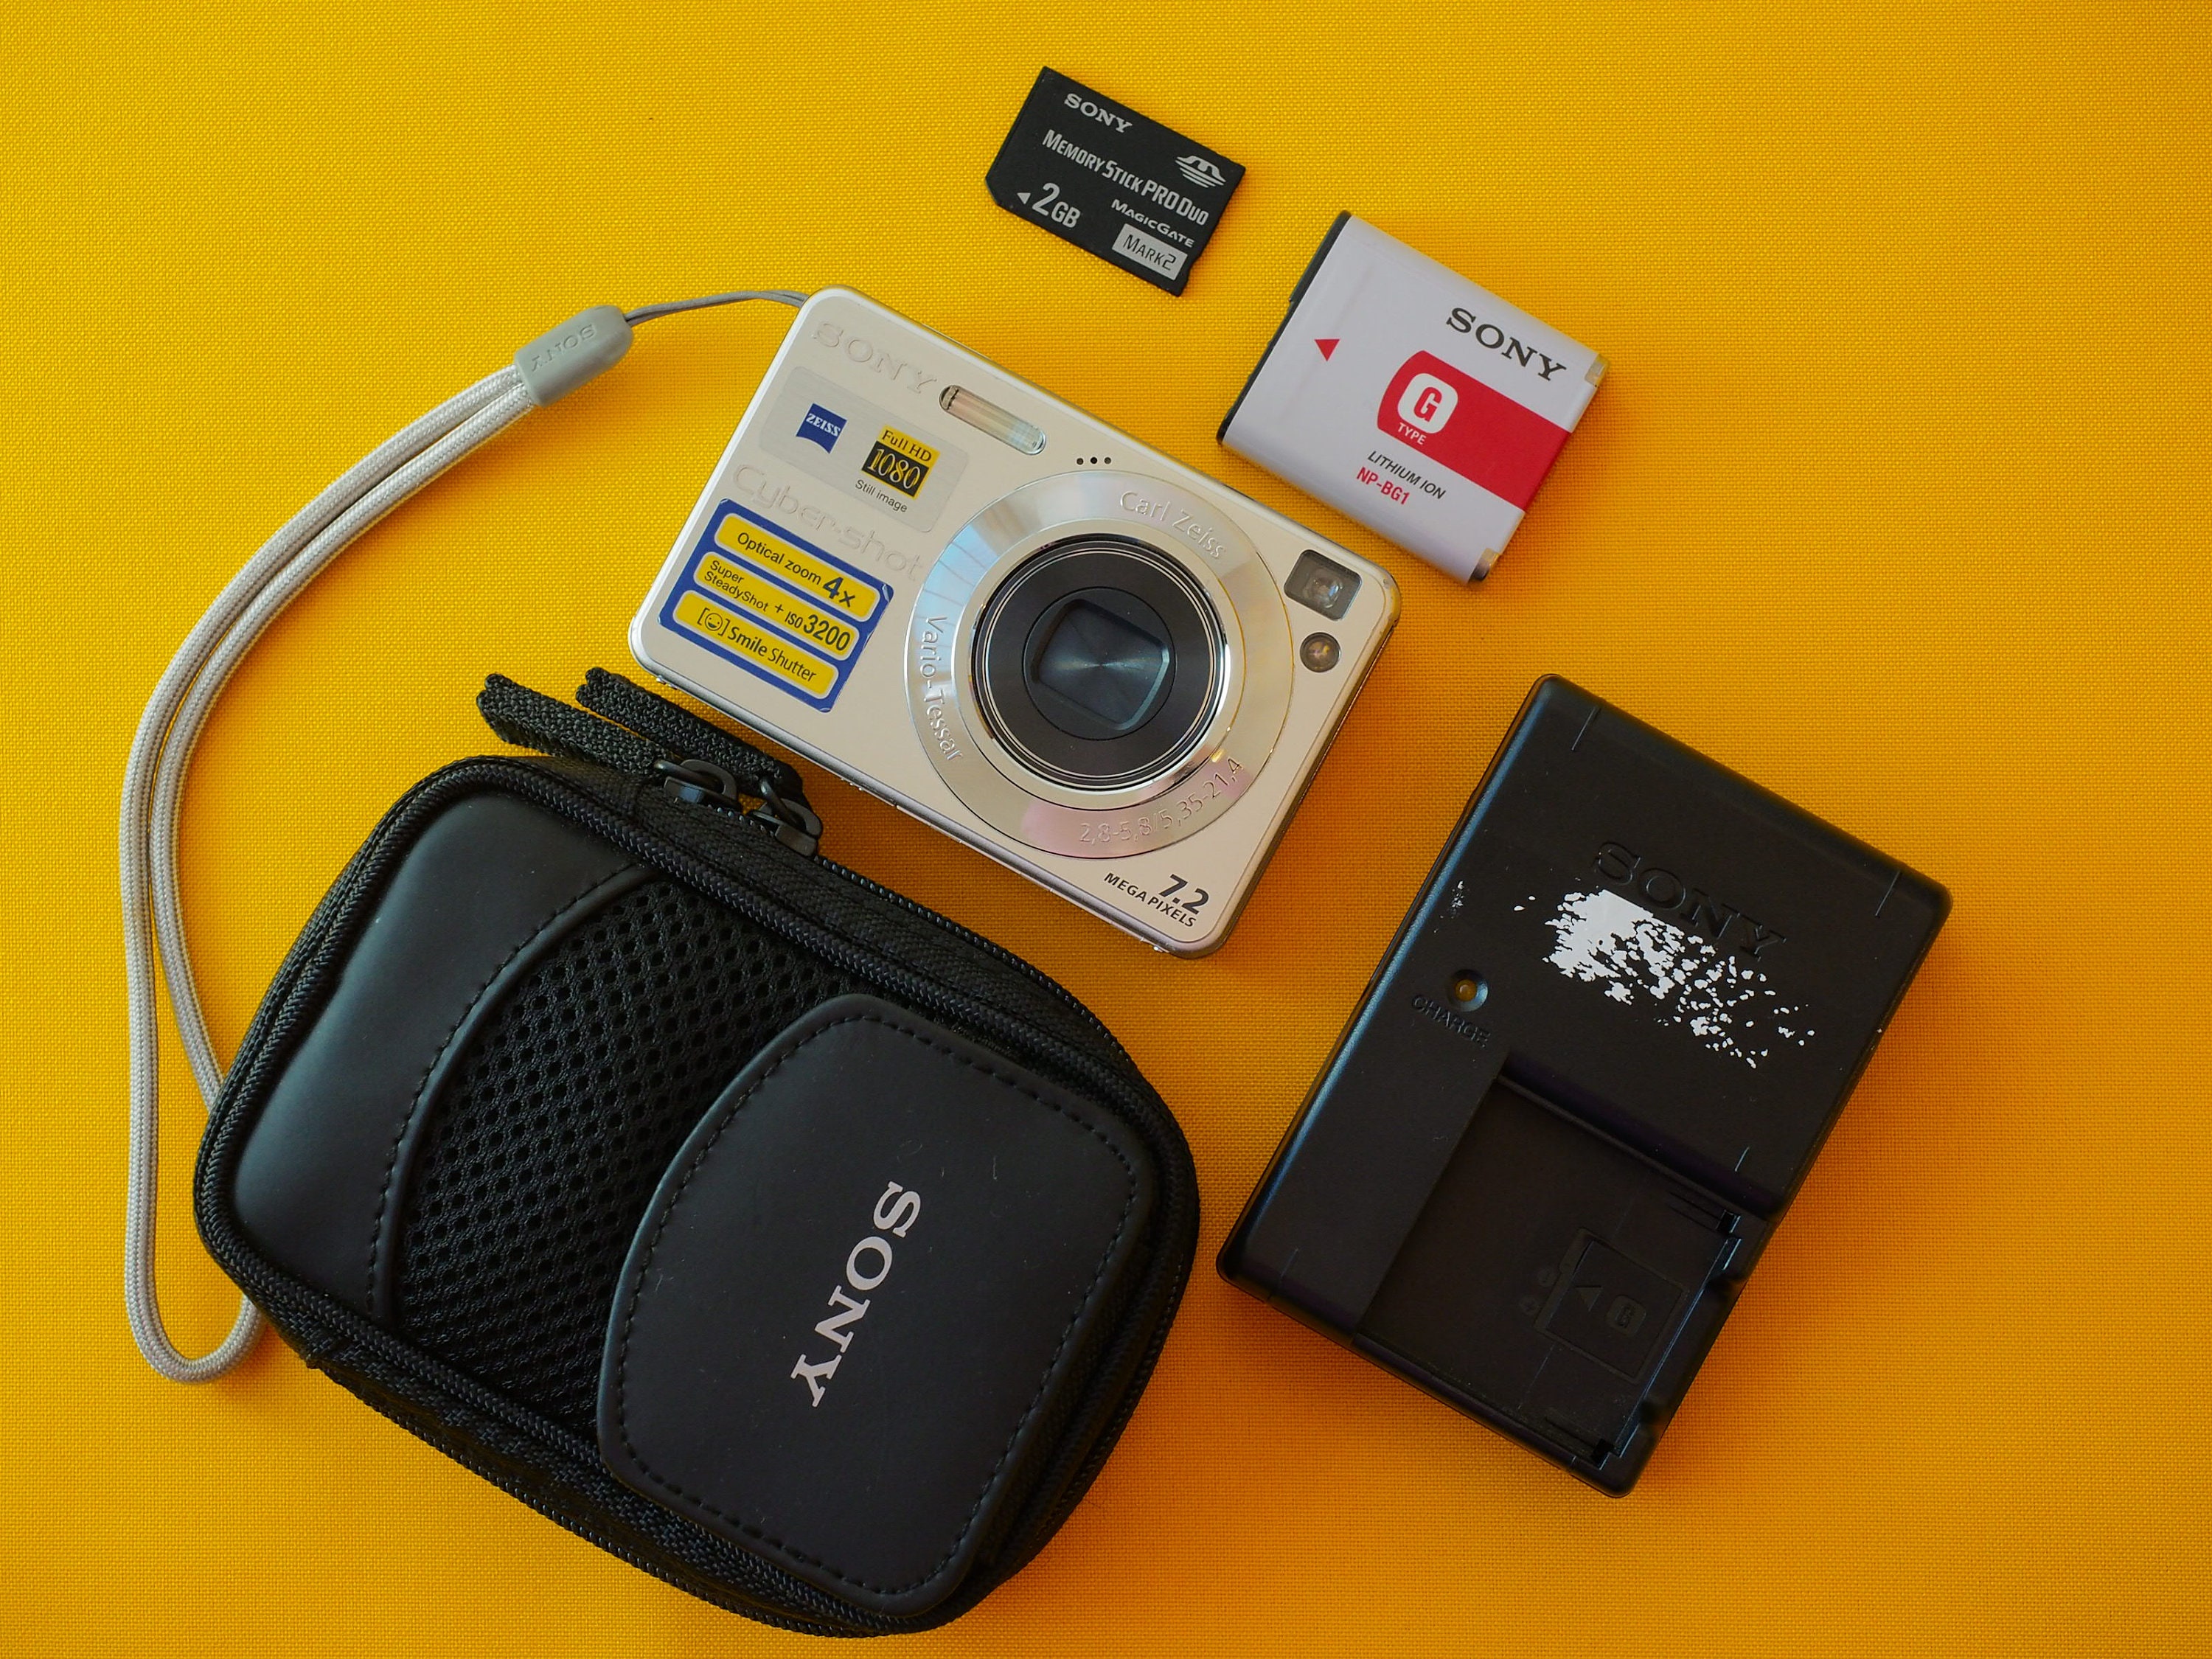 Las mejores ofertas en Sony Sony Cyber-shot cámaras digitales